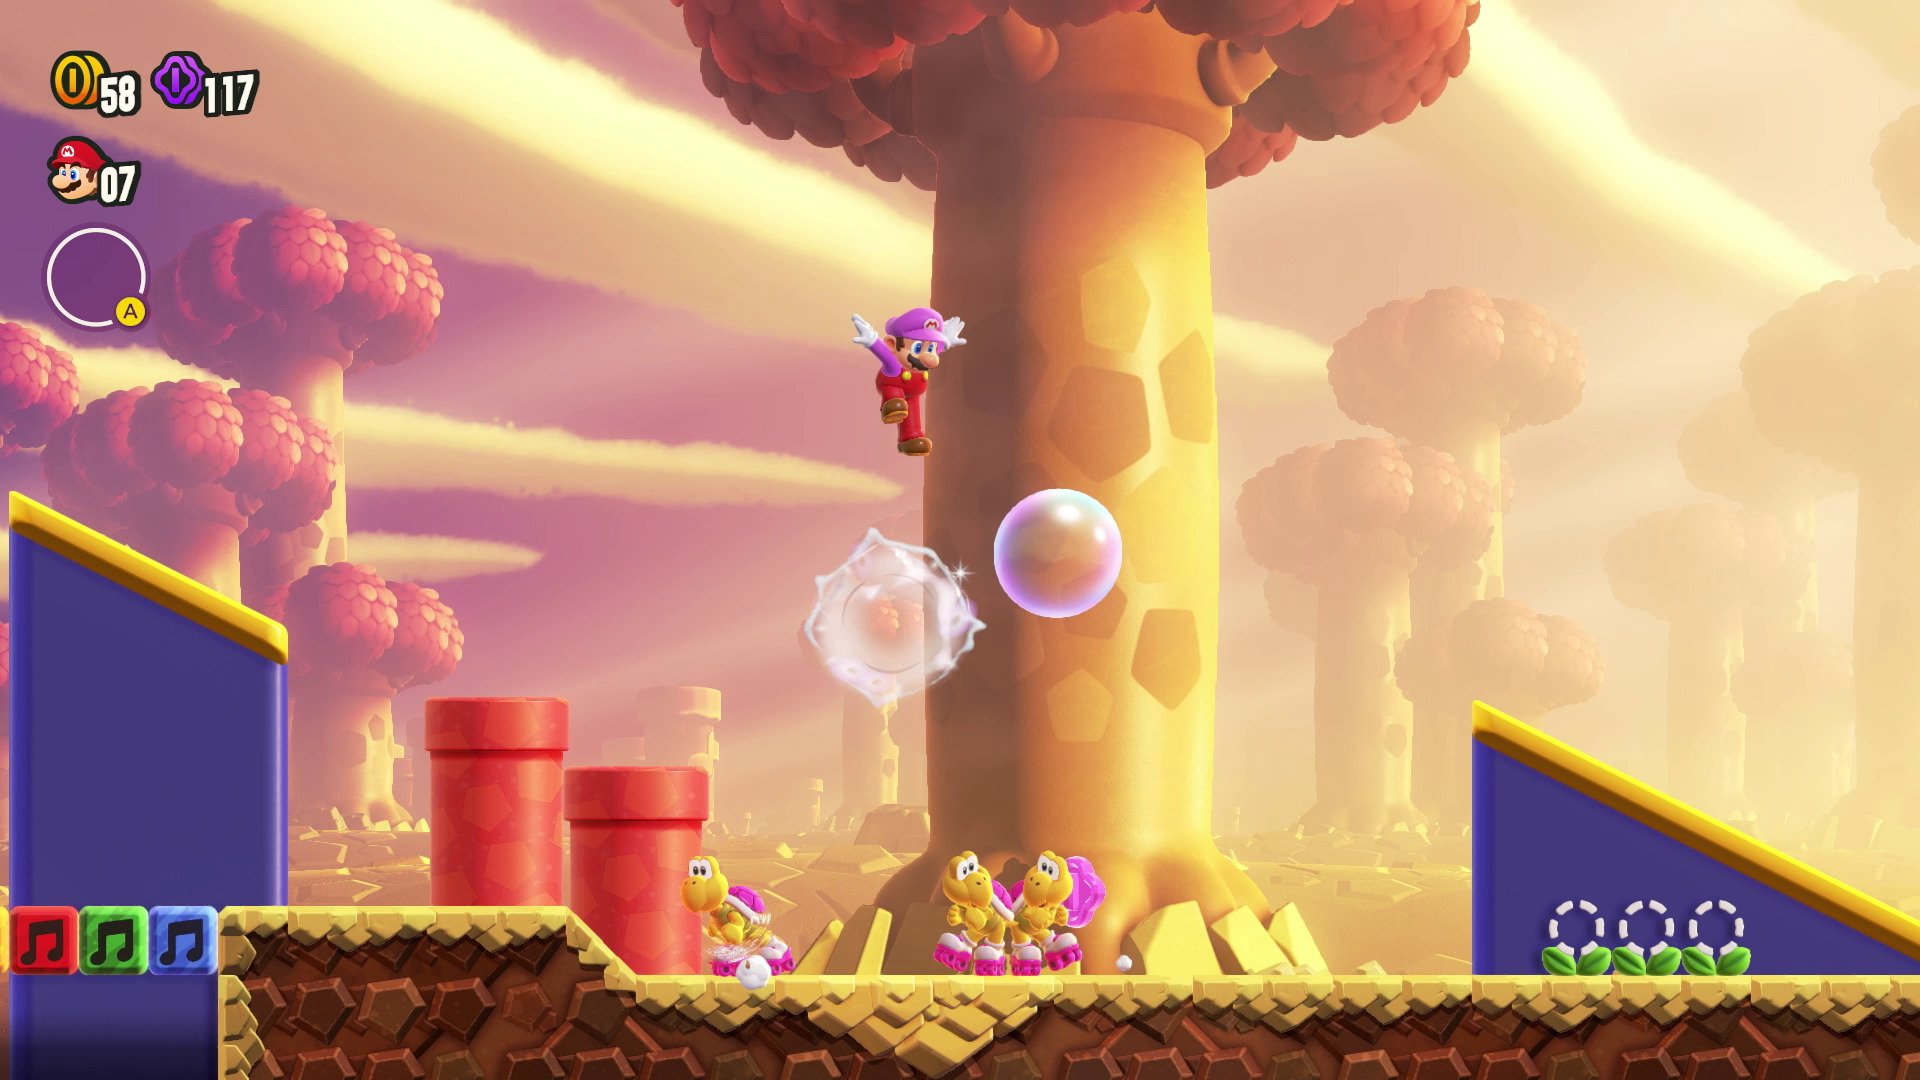 Super Mario Bros. Wonder diverte e representa ápice da franquia; veja review